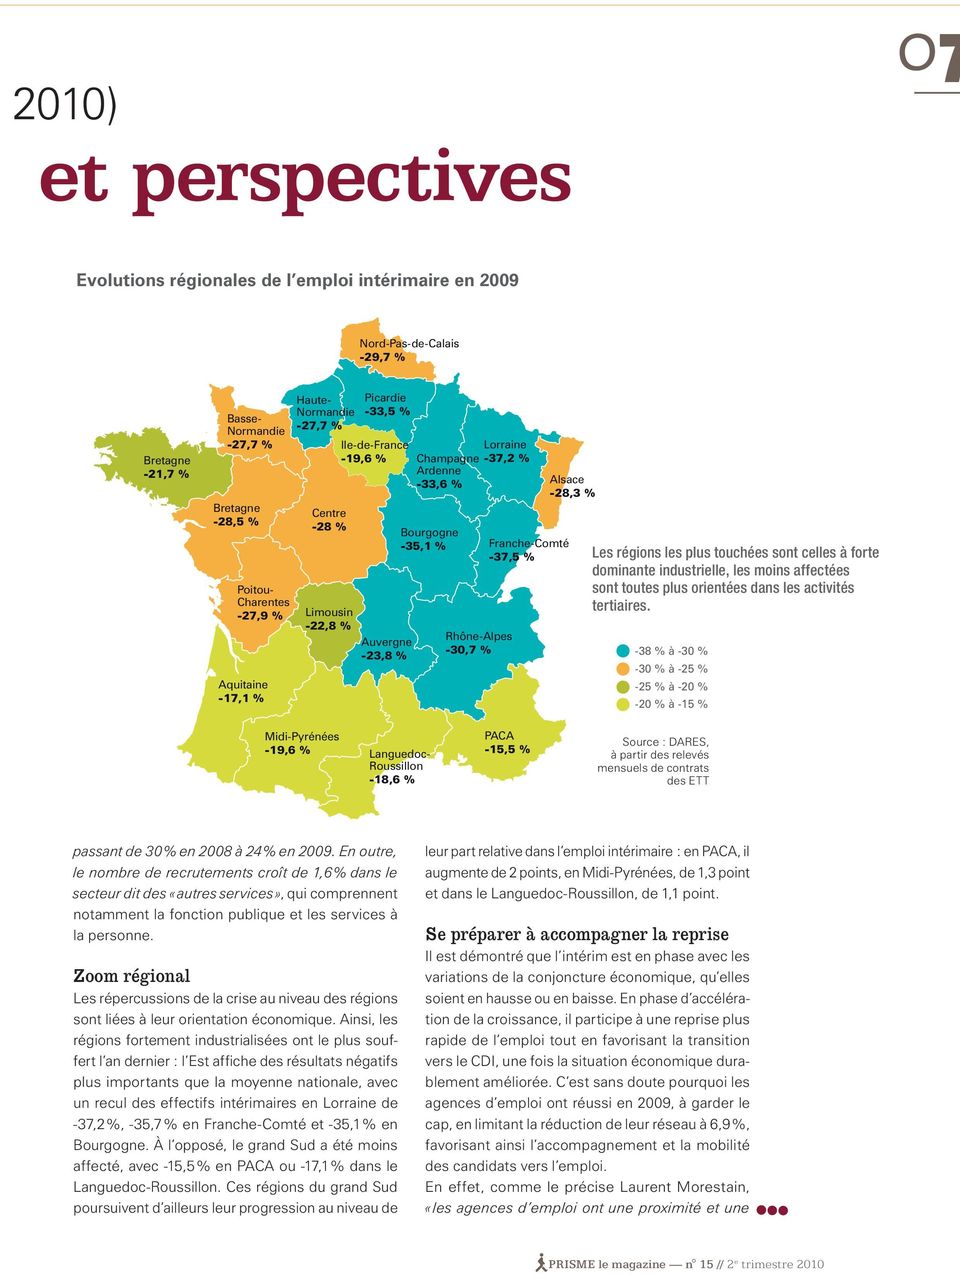 Franche-Comté -37,5 % Rhône-Alpes -30,7 % Alsace -28,3 % Les régions les plus touchées sont celles à forte dominante industrielle, les moins affectées sont toutes plus orientées dans les activités